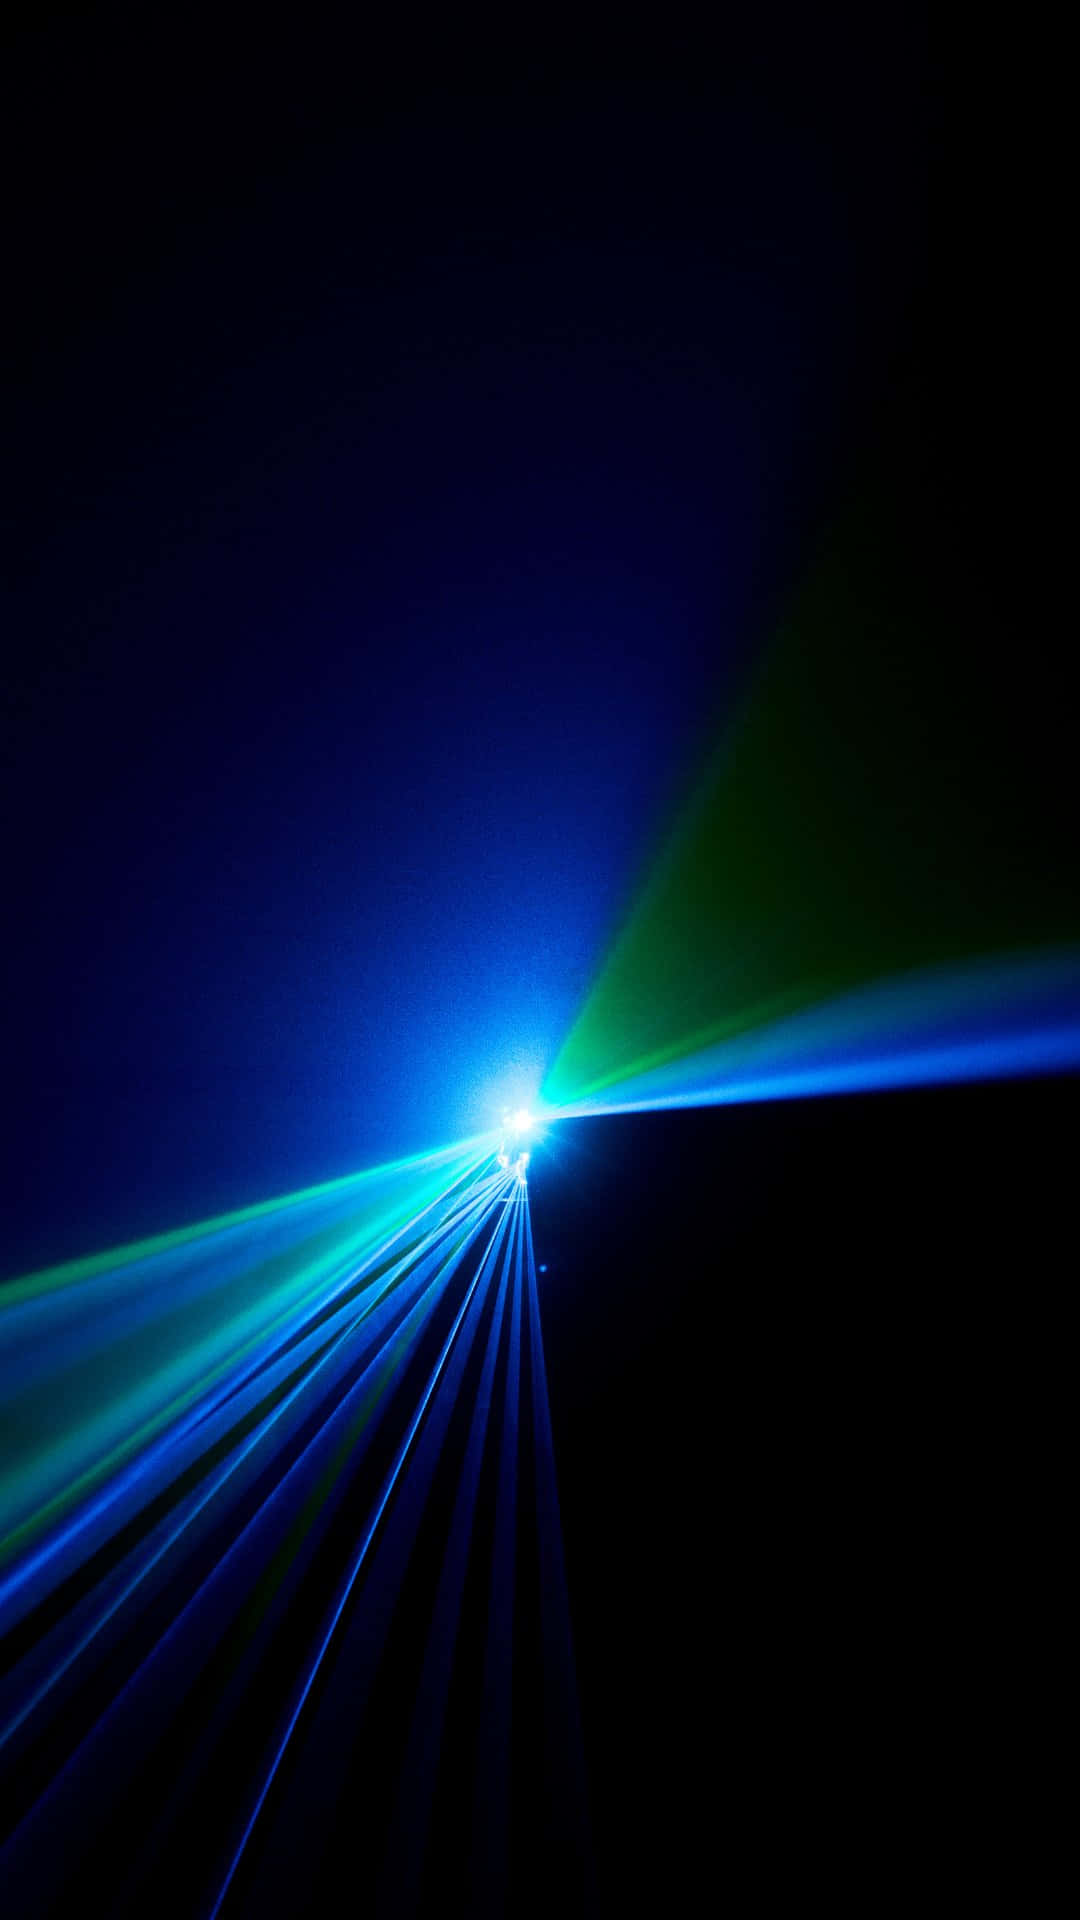 Blue Green Laser Light Show Wallpaper